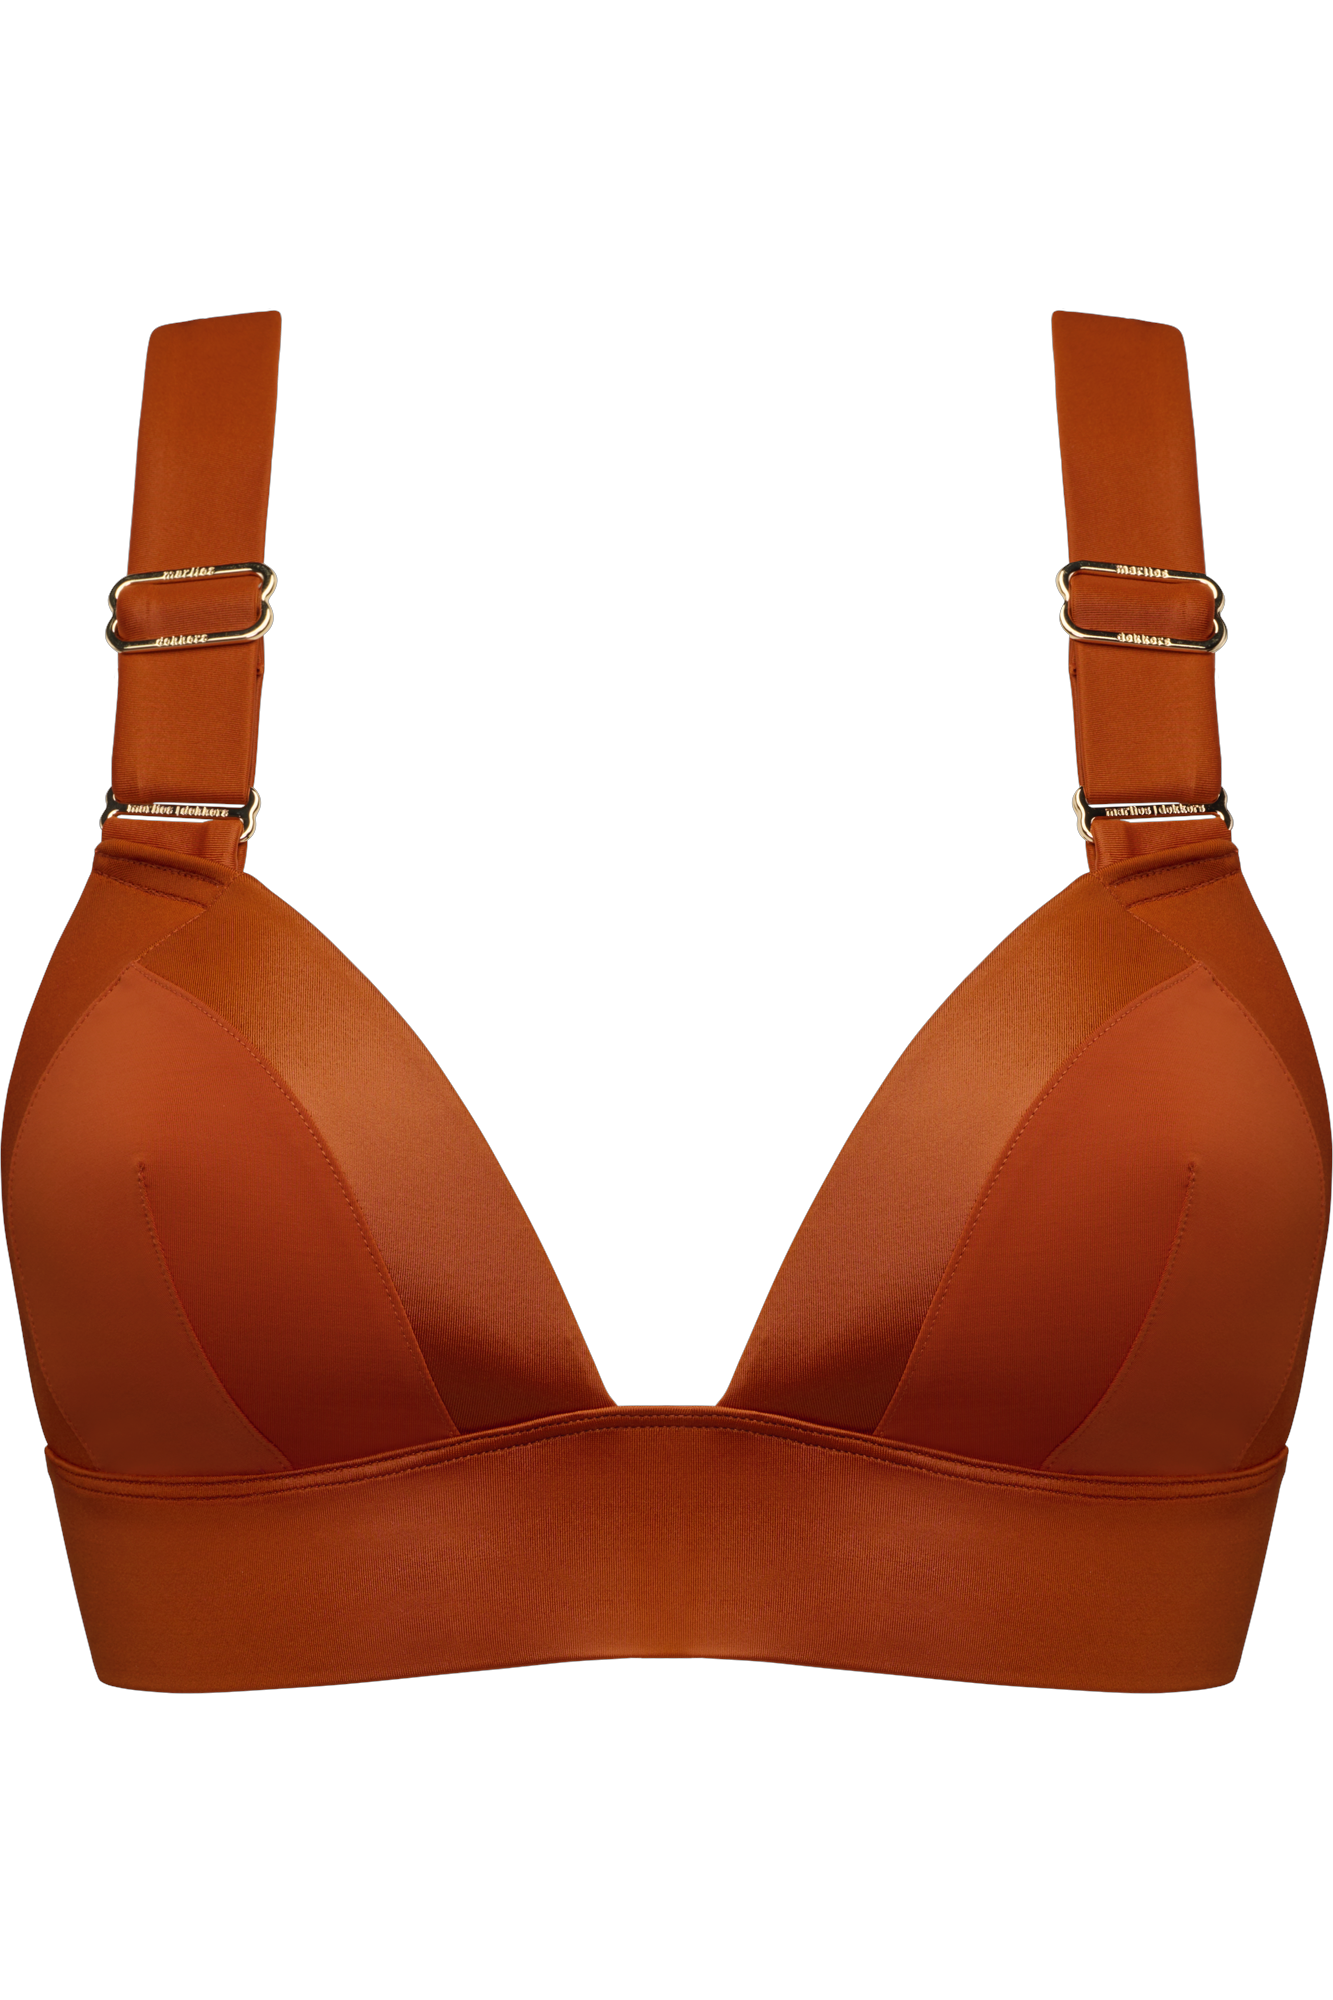 Marlies Dekkers cache coeur bralette bikini top unwired padded burnt orange